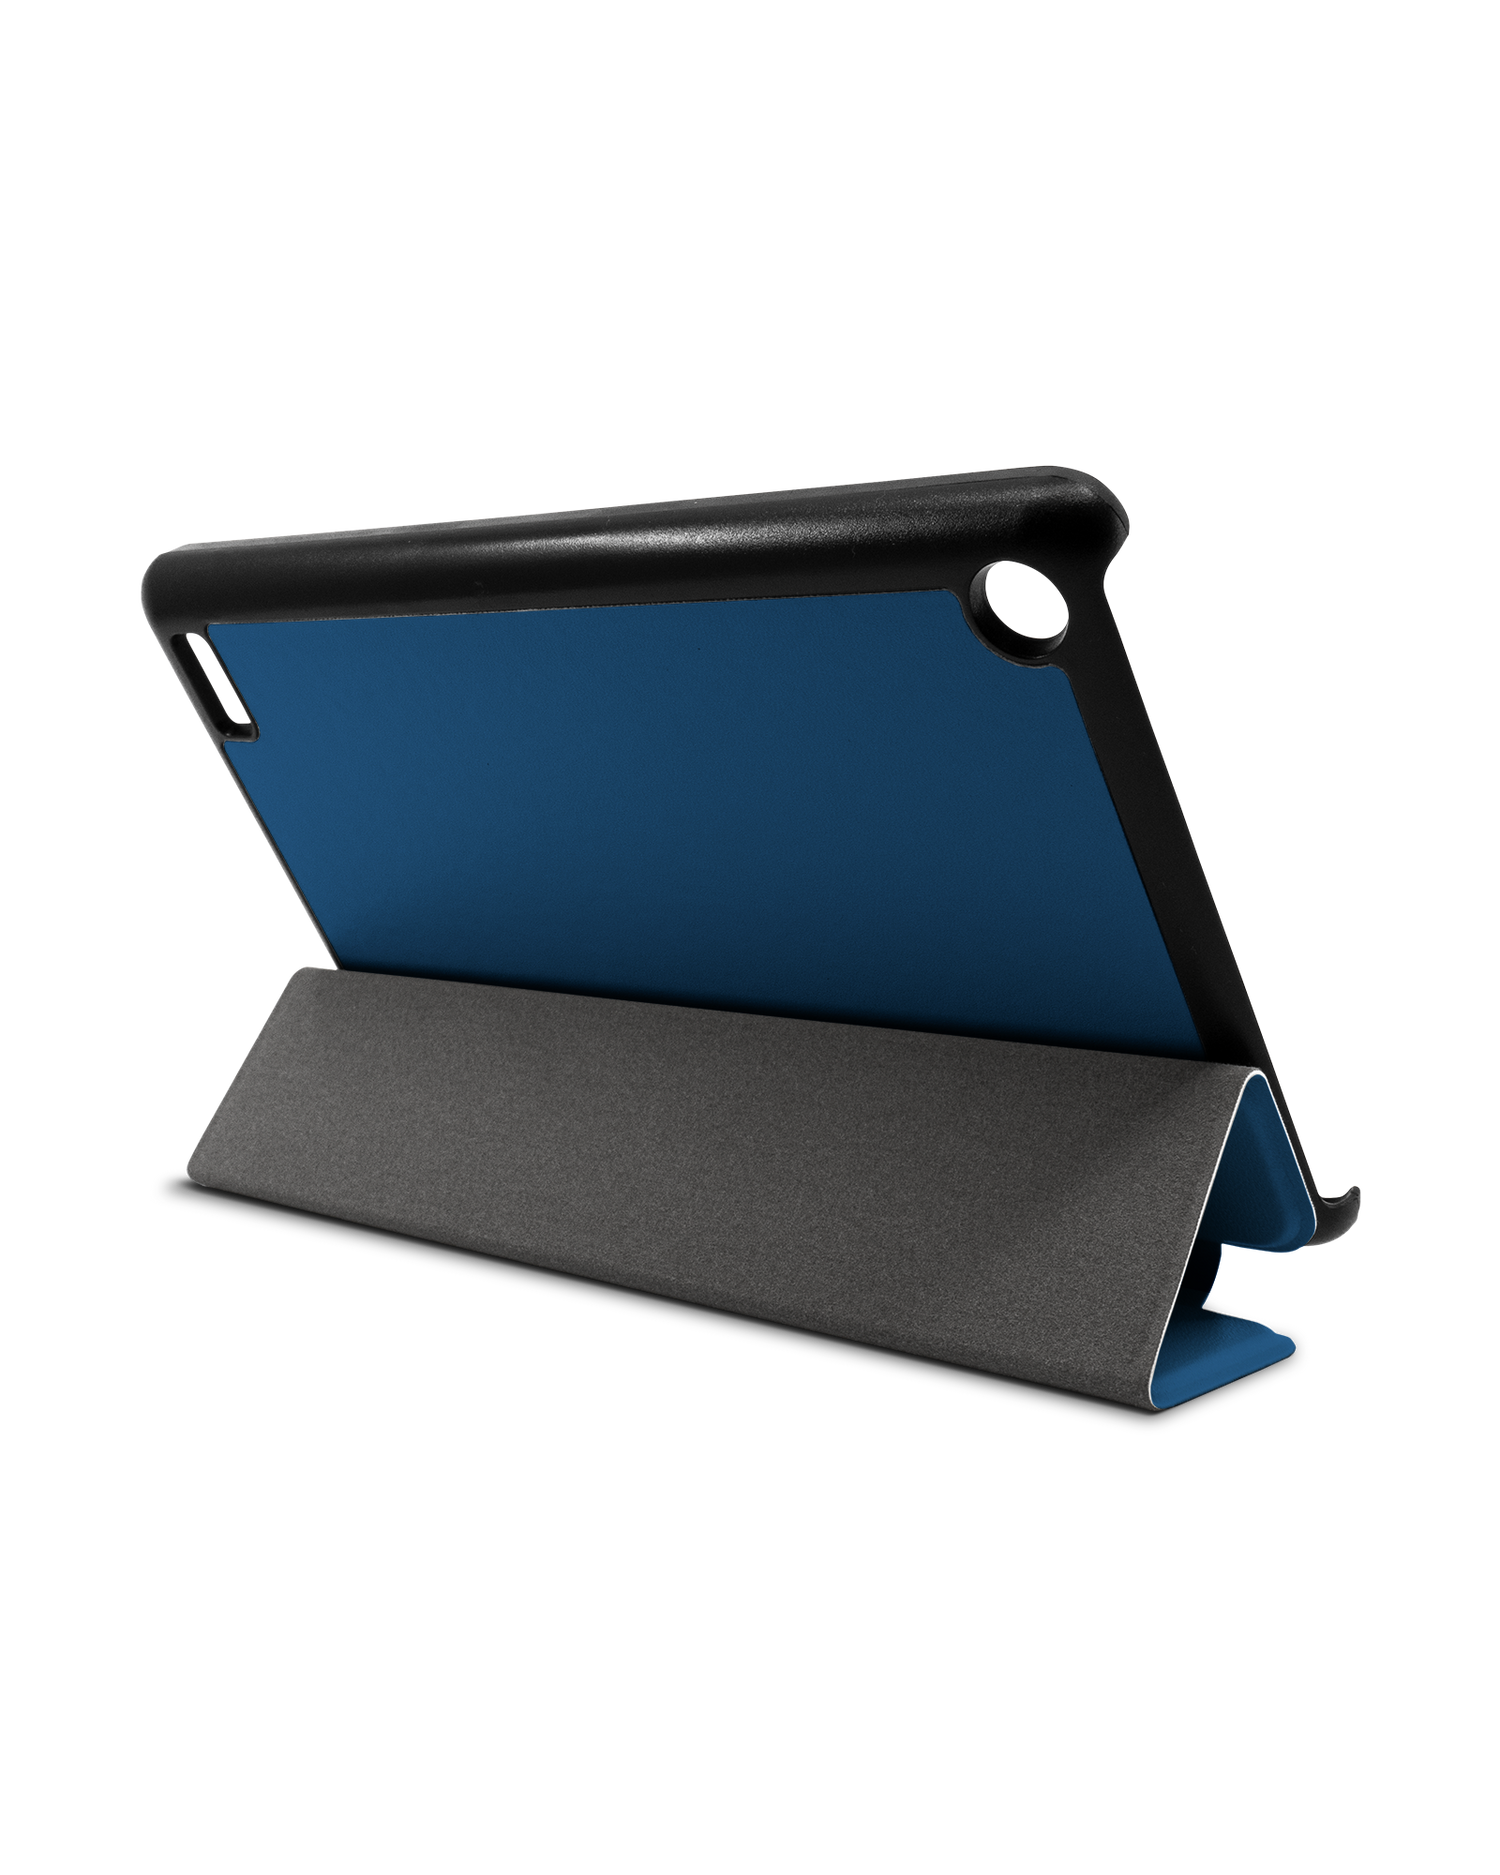 CLASSIC BLUE Tablet Smart Case für Amazon Fire 7: Aufgestellt im Querformat